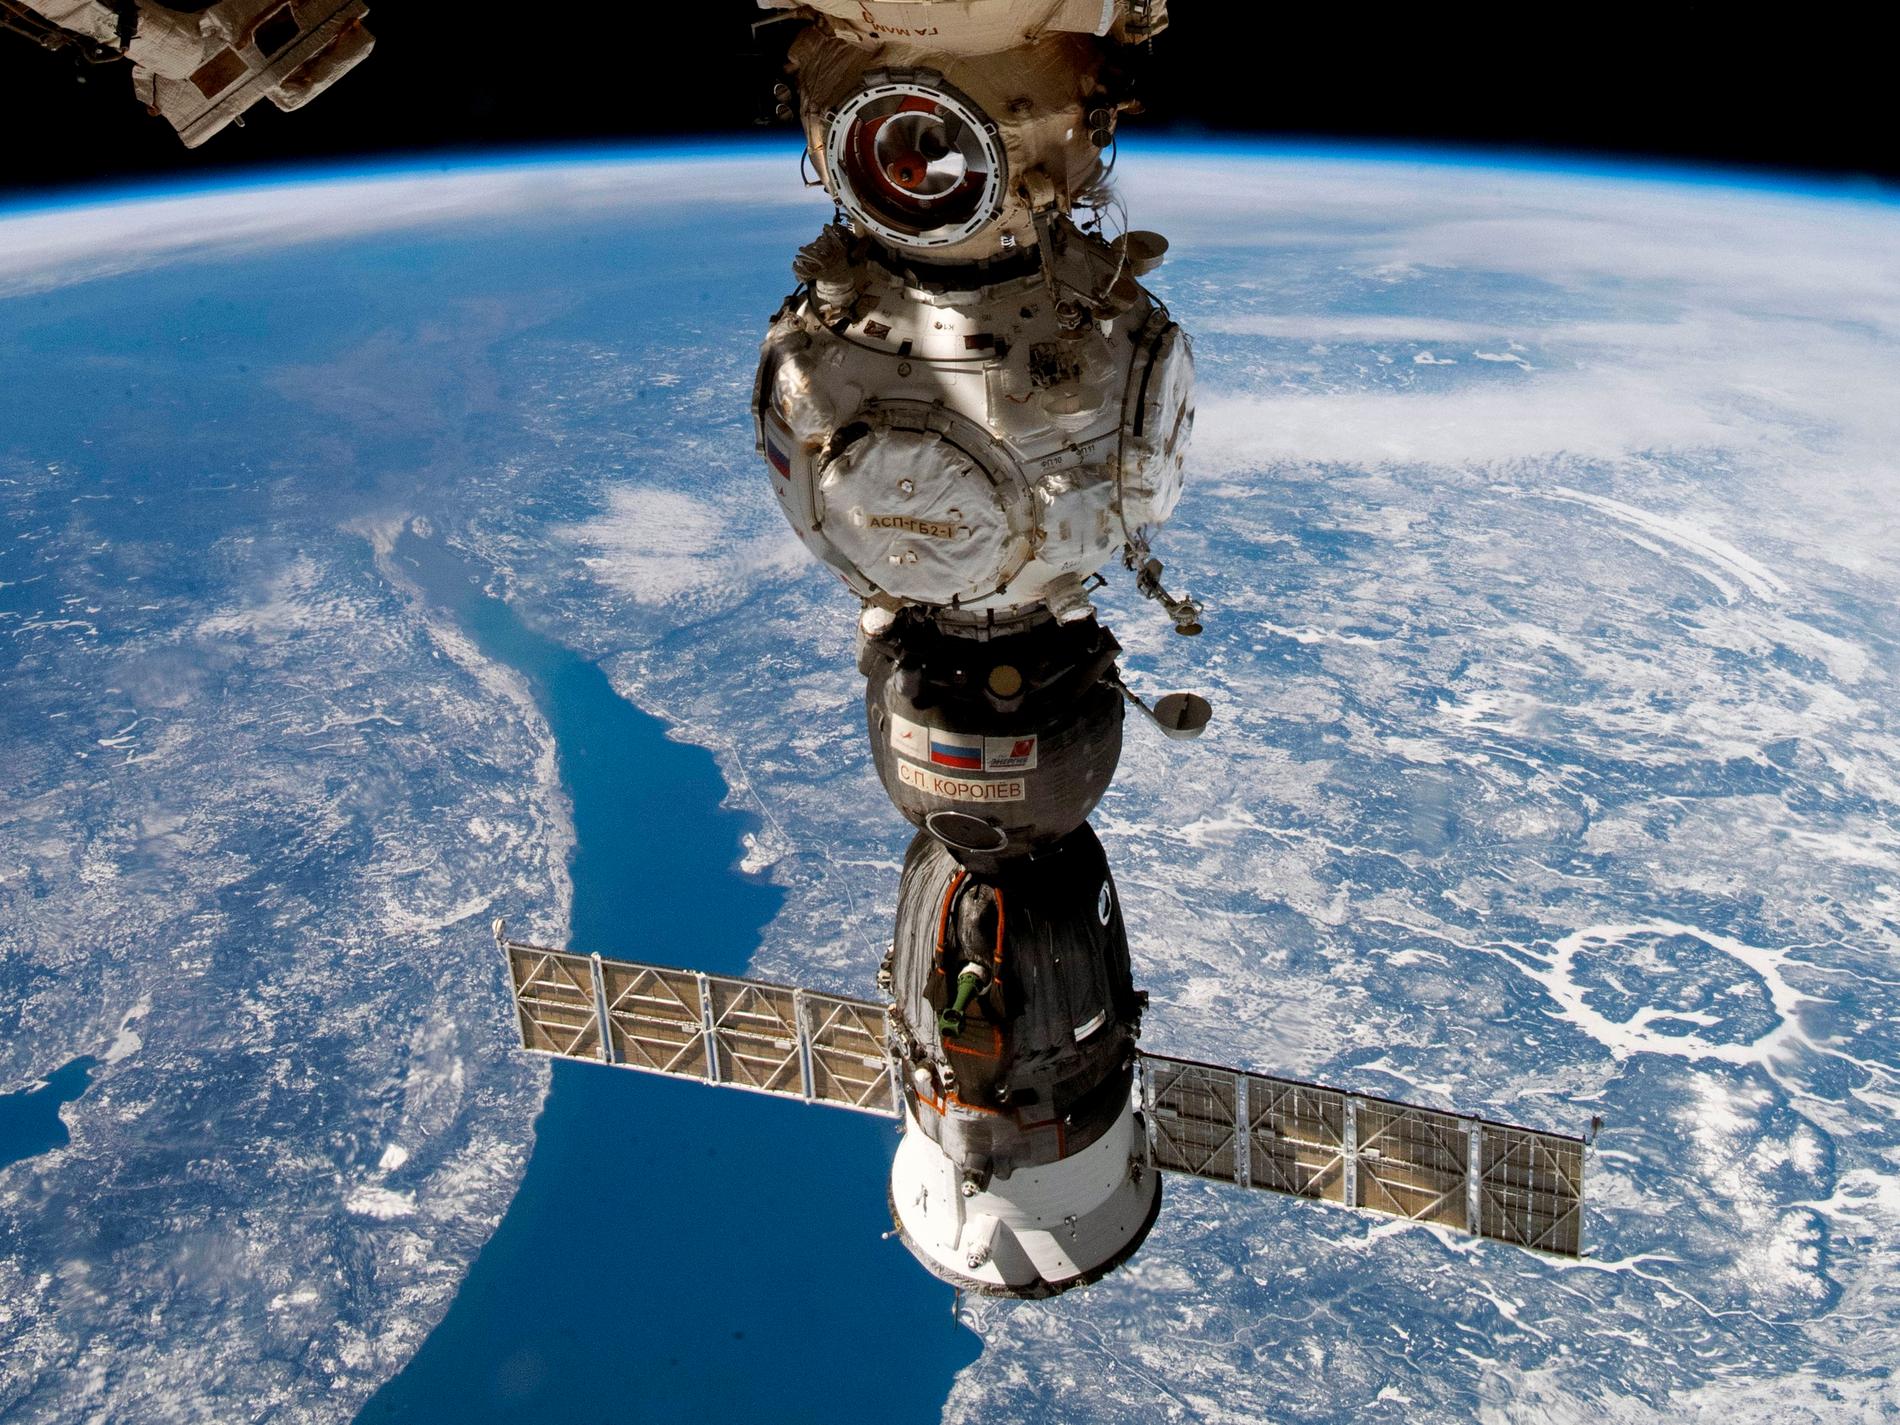 Rysk hjälp på väg till läckande rymdstation